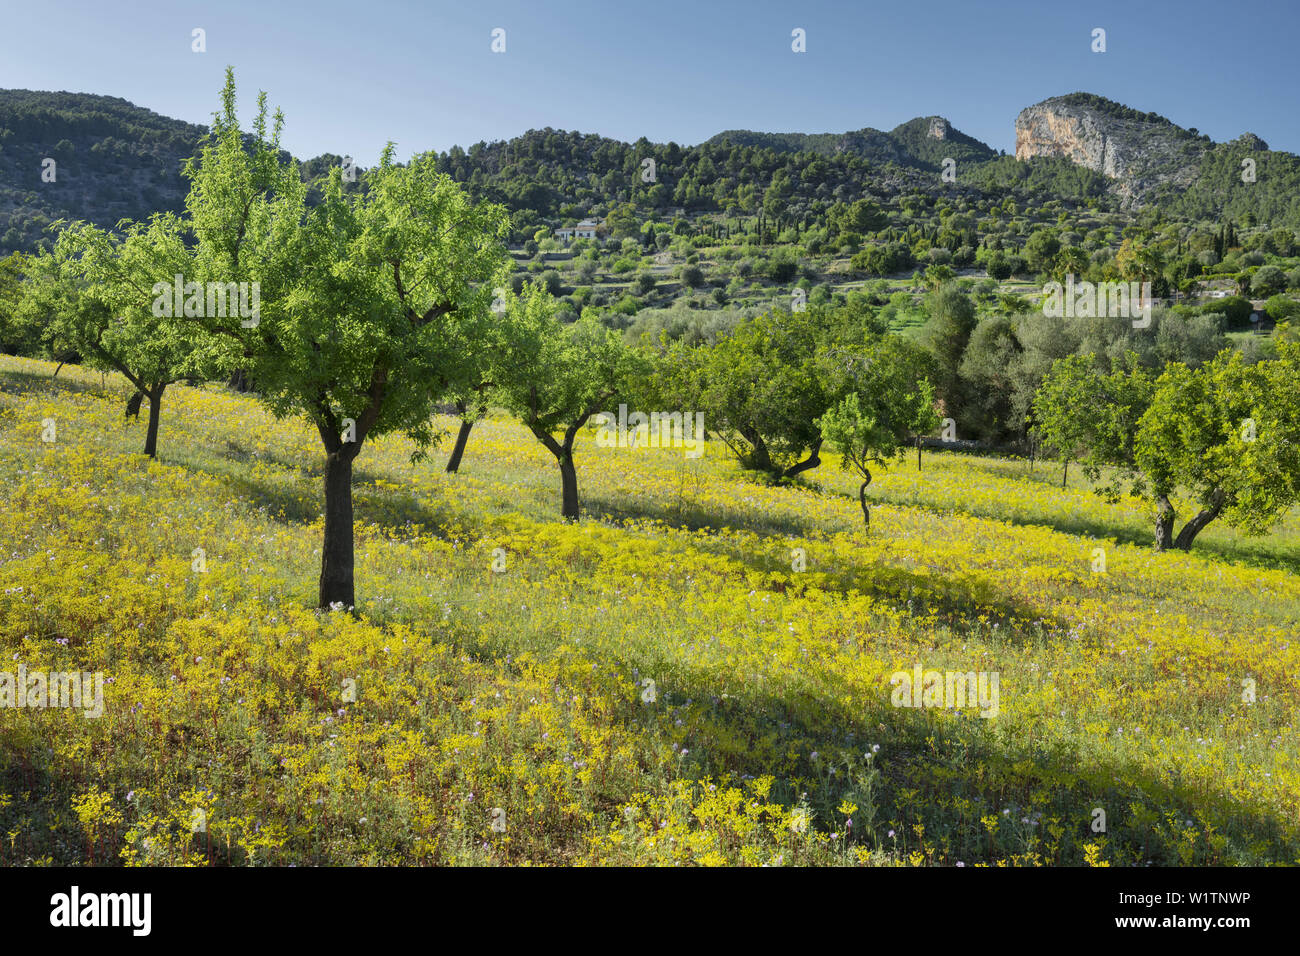 Almond trees, Alaro, Mallorca, Balearics, Spain Stock Photo